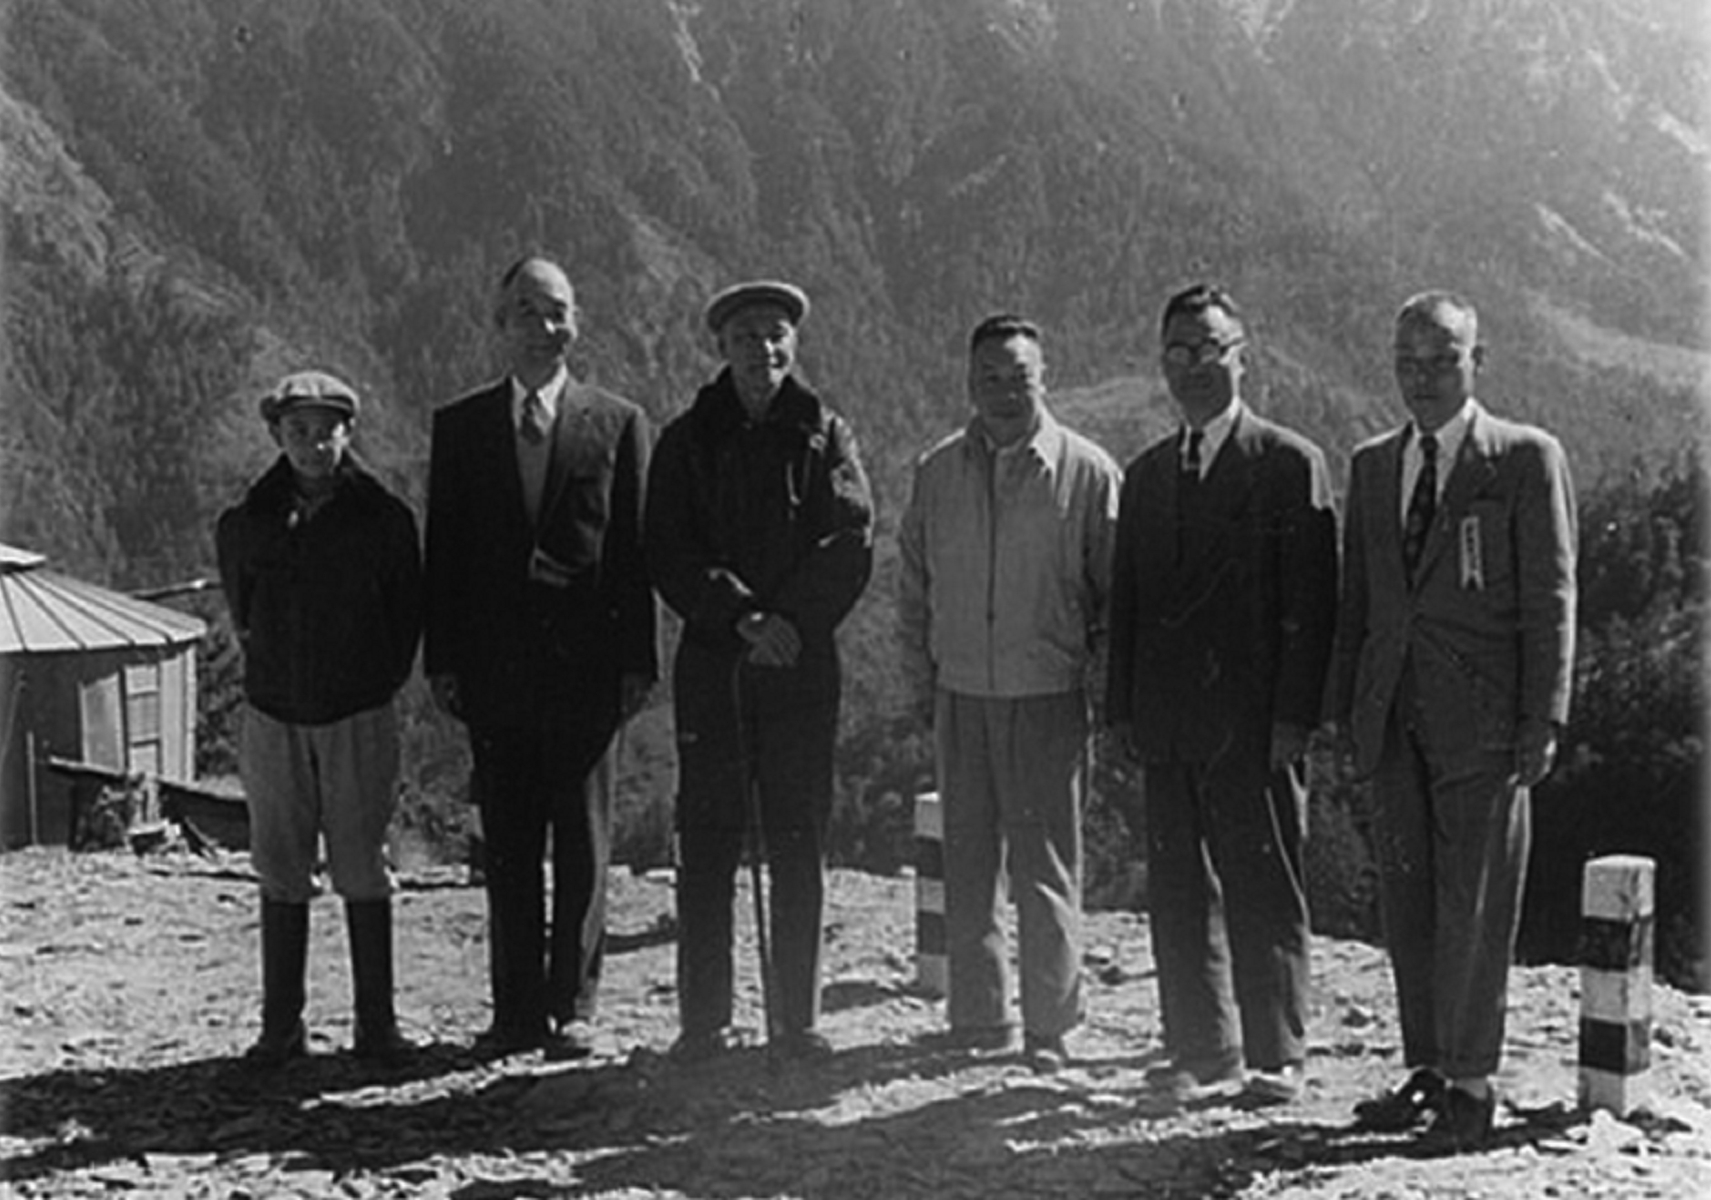 民國52年9月27日總統蔣公視察北橫西段工程概況，由輔導會主任委員經國先生陪同巡視工程進度與施工概況時合影。